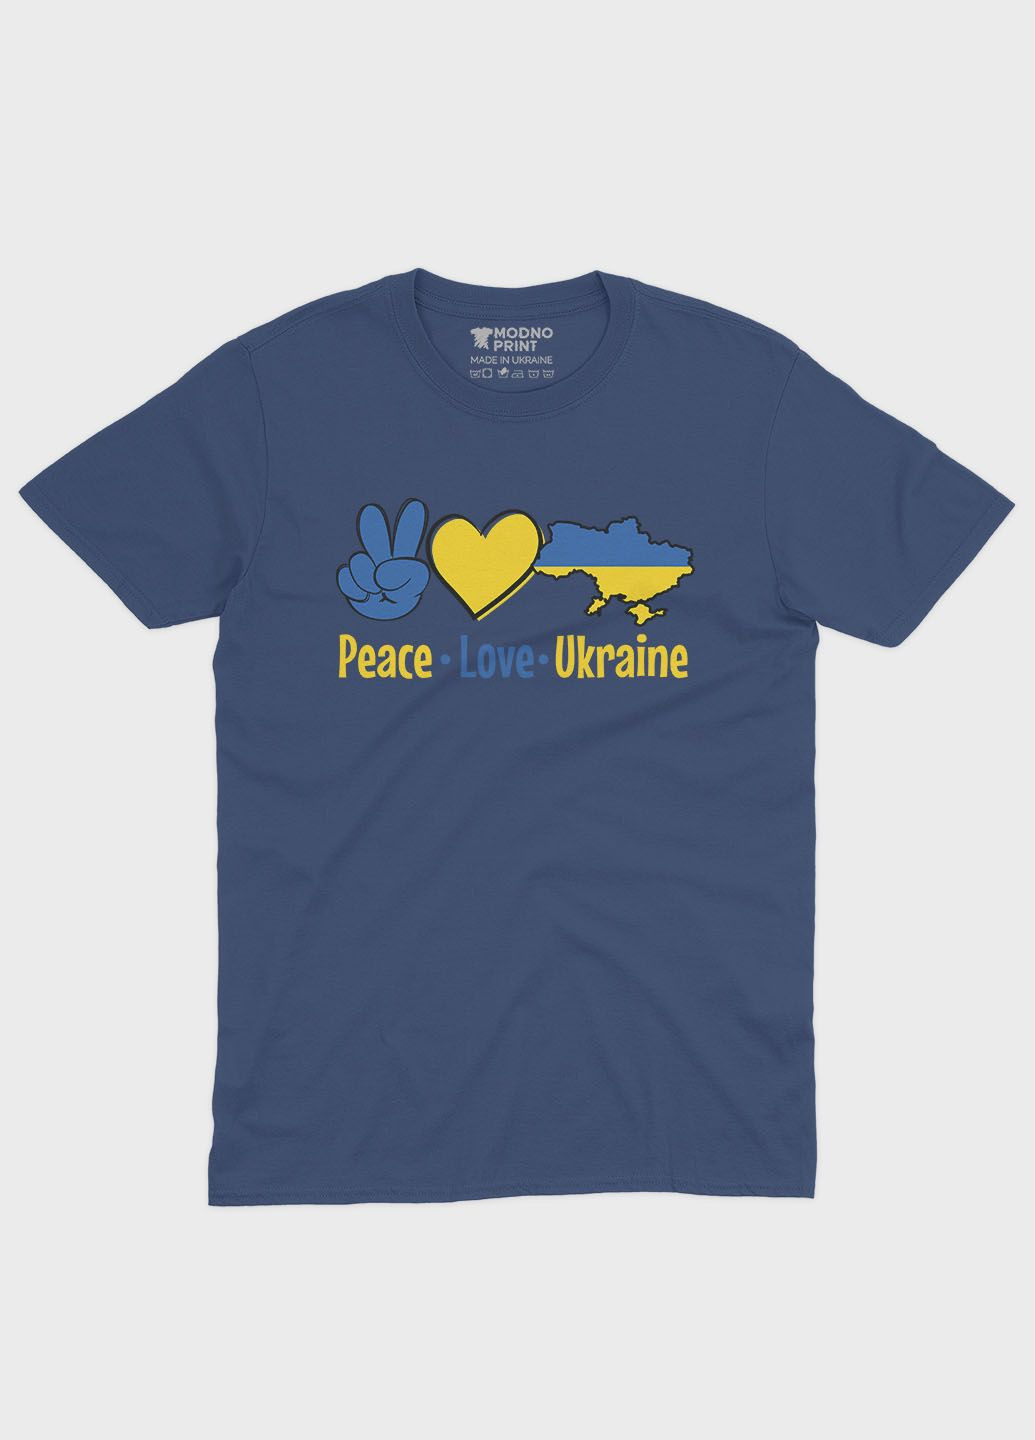 Темно-синяя демисезонная футболка для девочки с патриотическим принтом peace love ukraine (ts001-2-nav-005-1-040-g) Modno